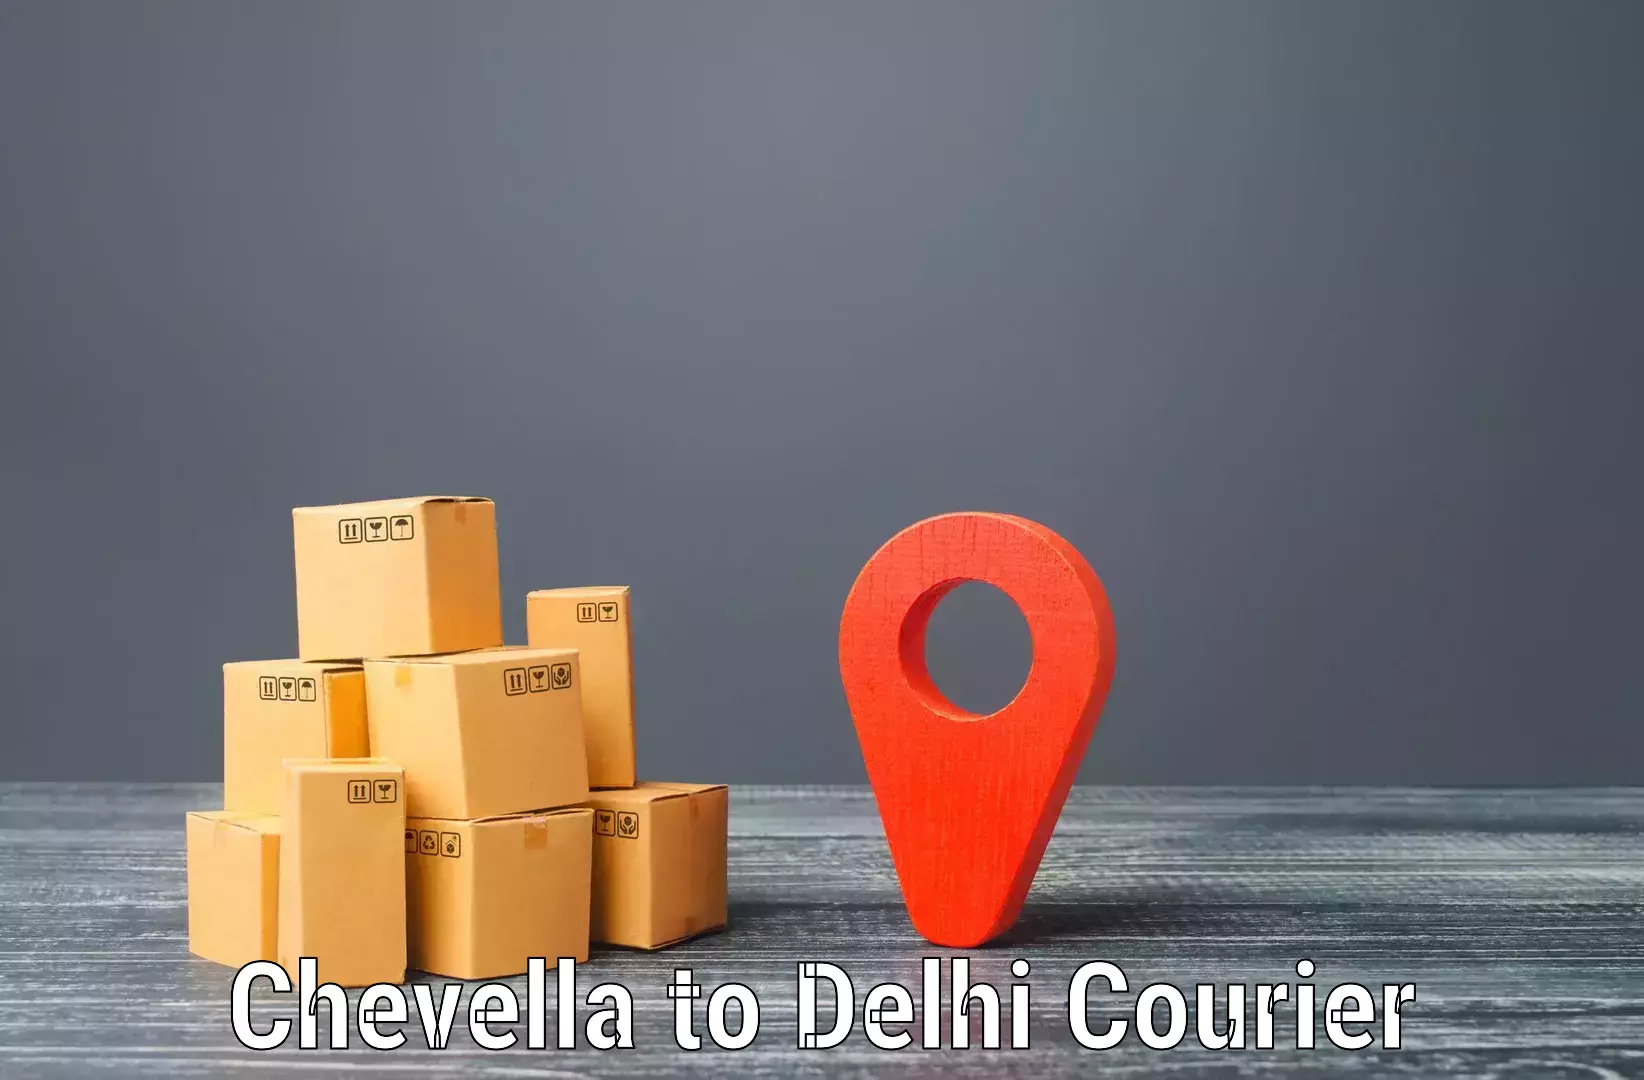 Specialized shipment handling Chevella to University of Delhi